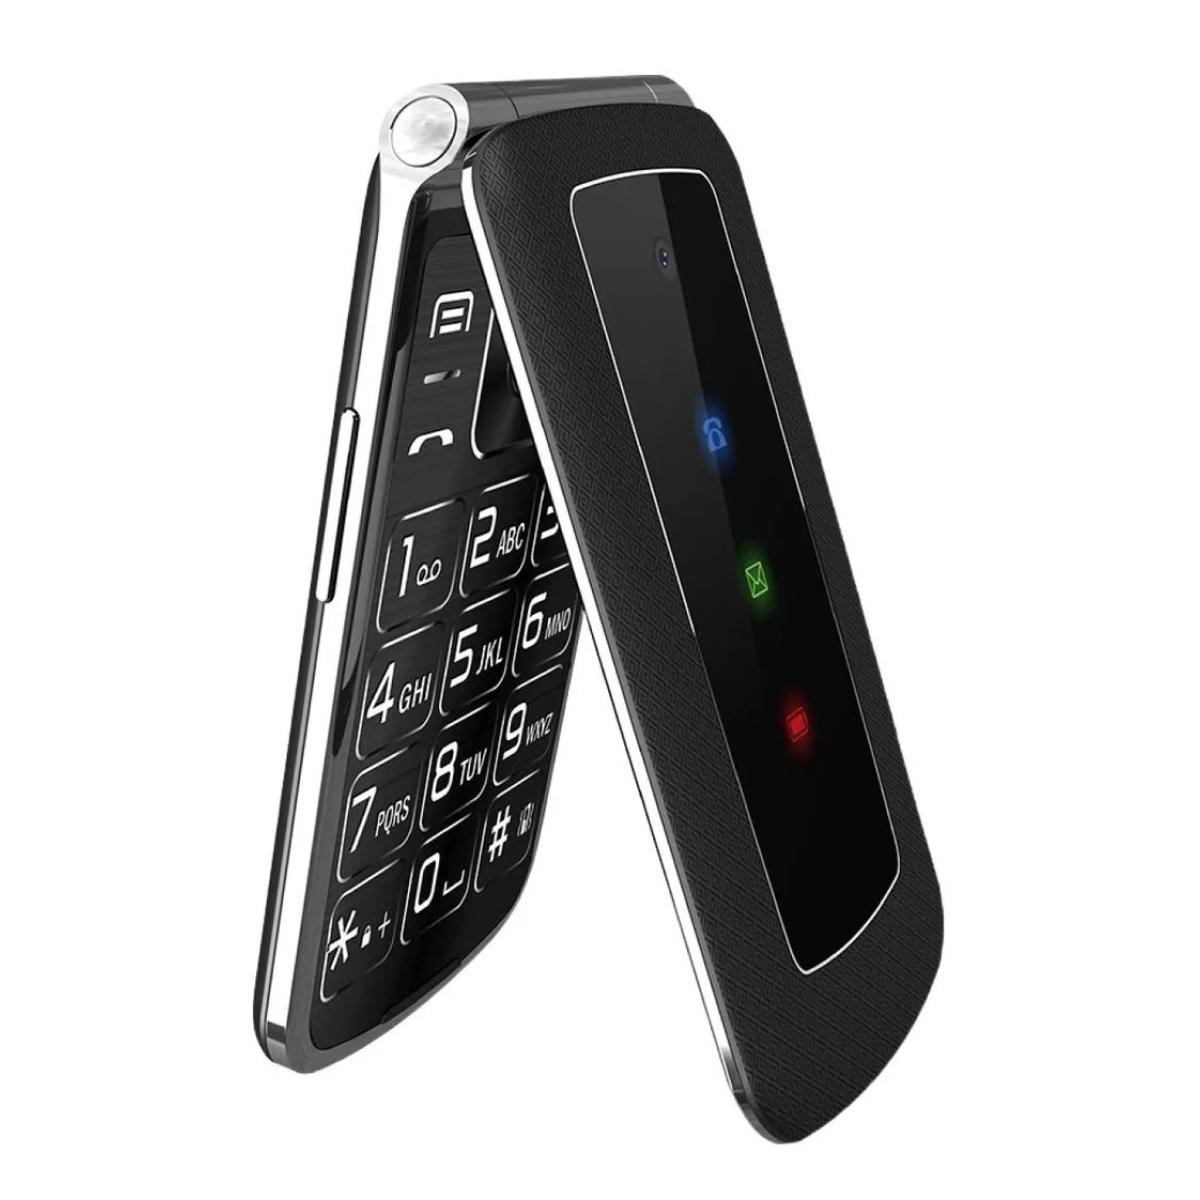 Недорогие телефоны раскладушки. Мобильный телефон Olmio f28 (черный). Олмио раскладушка f28. Olmio f28 Black. Olmio мобильный телефон f28 Olmio.